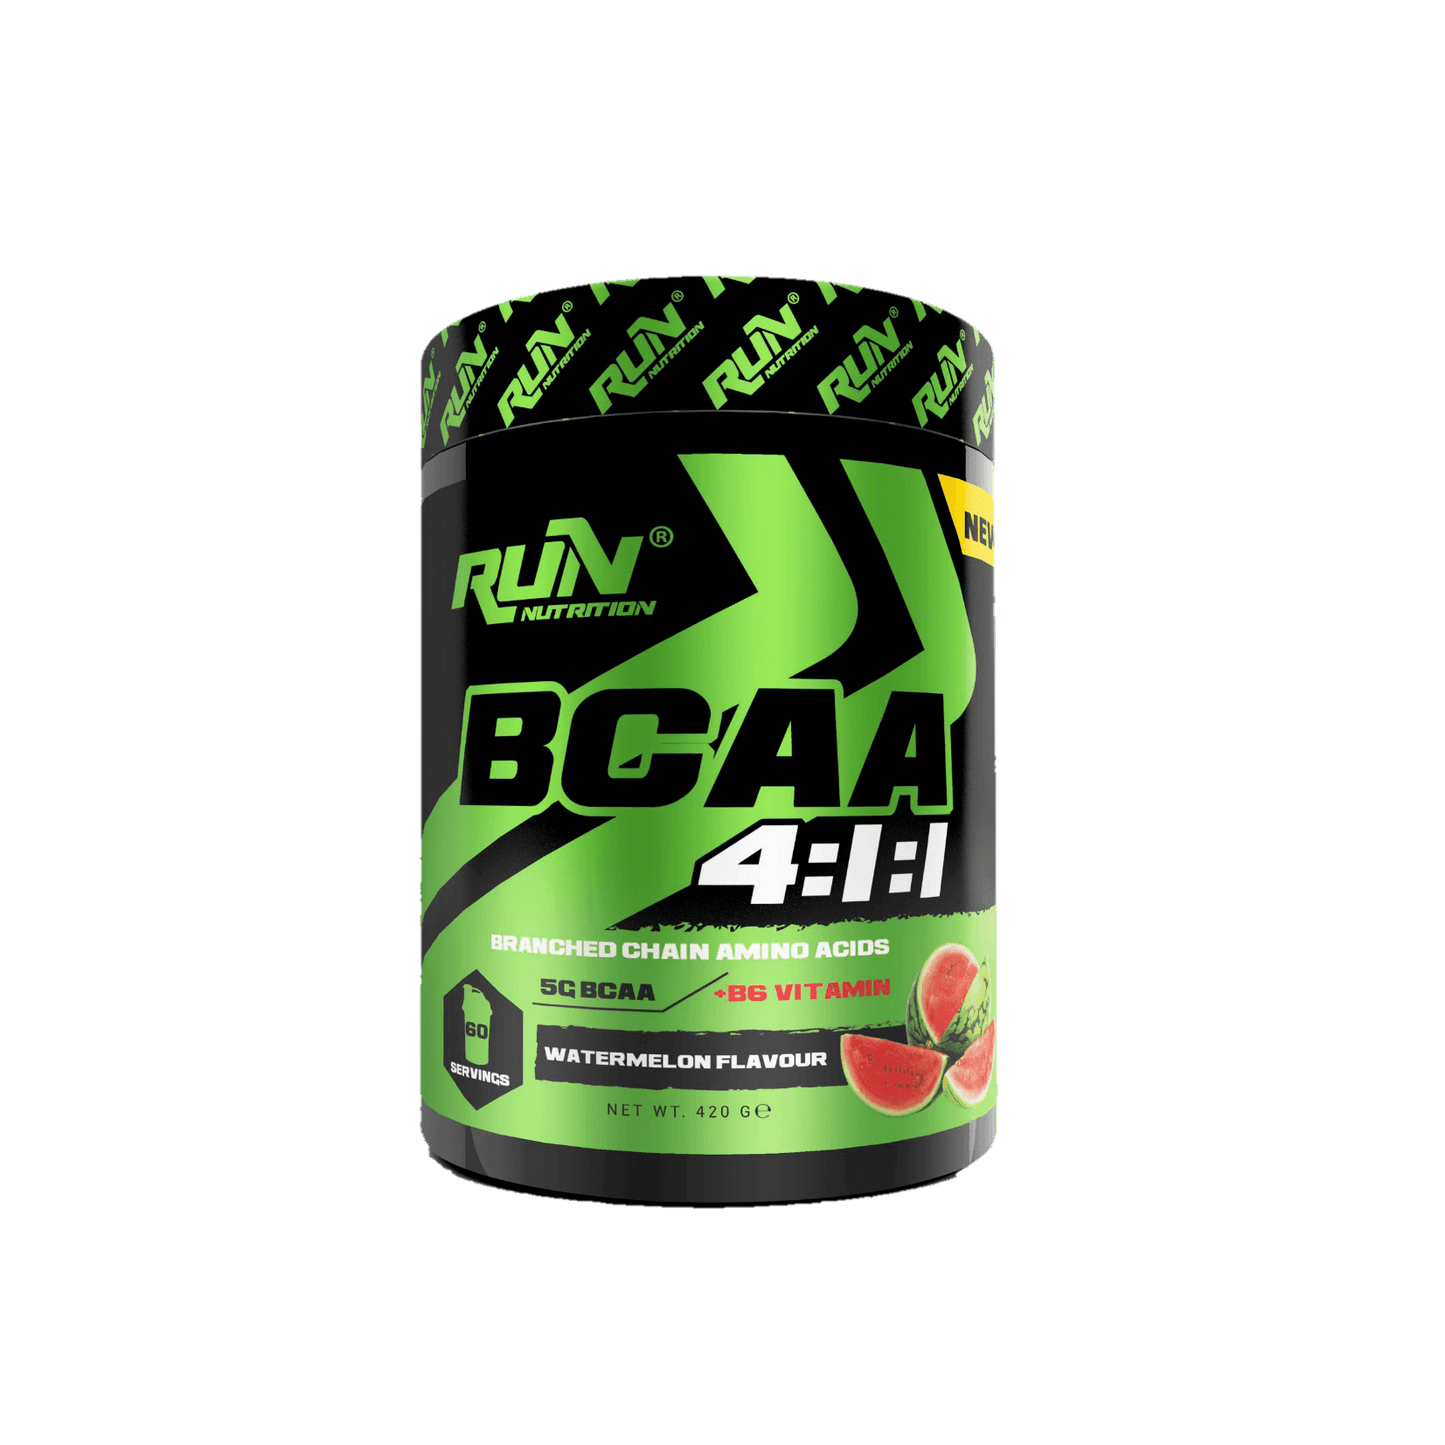 Run BCAA - The Supplements Factory